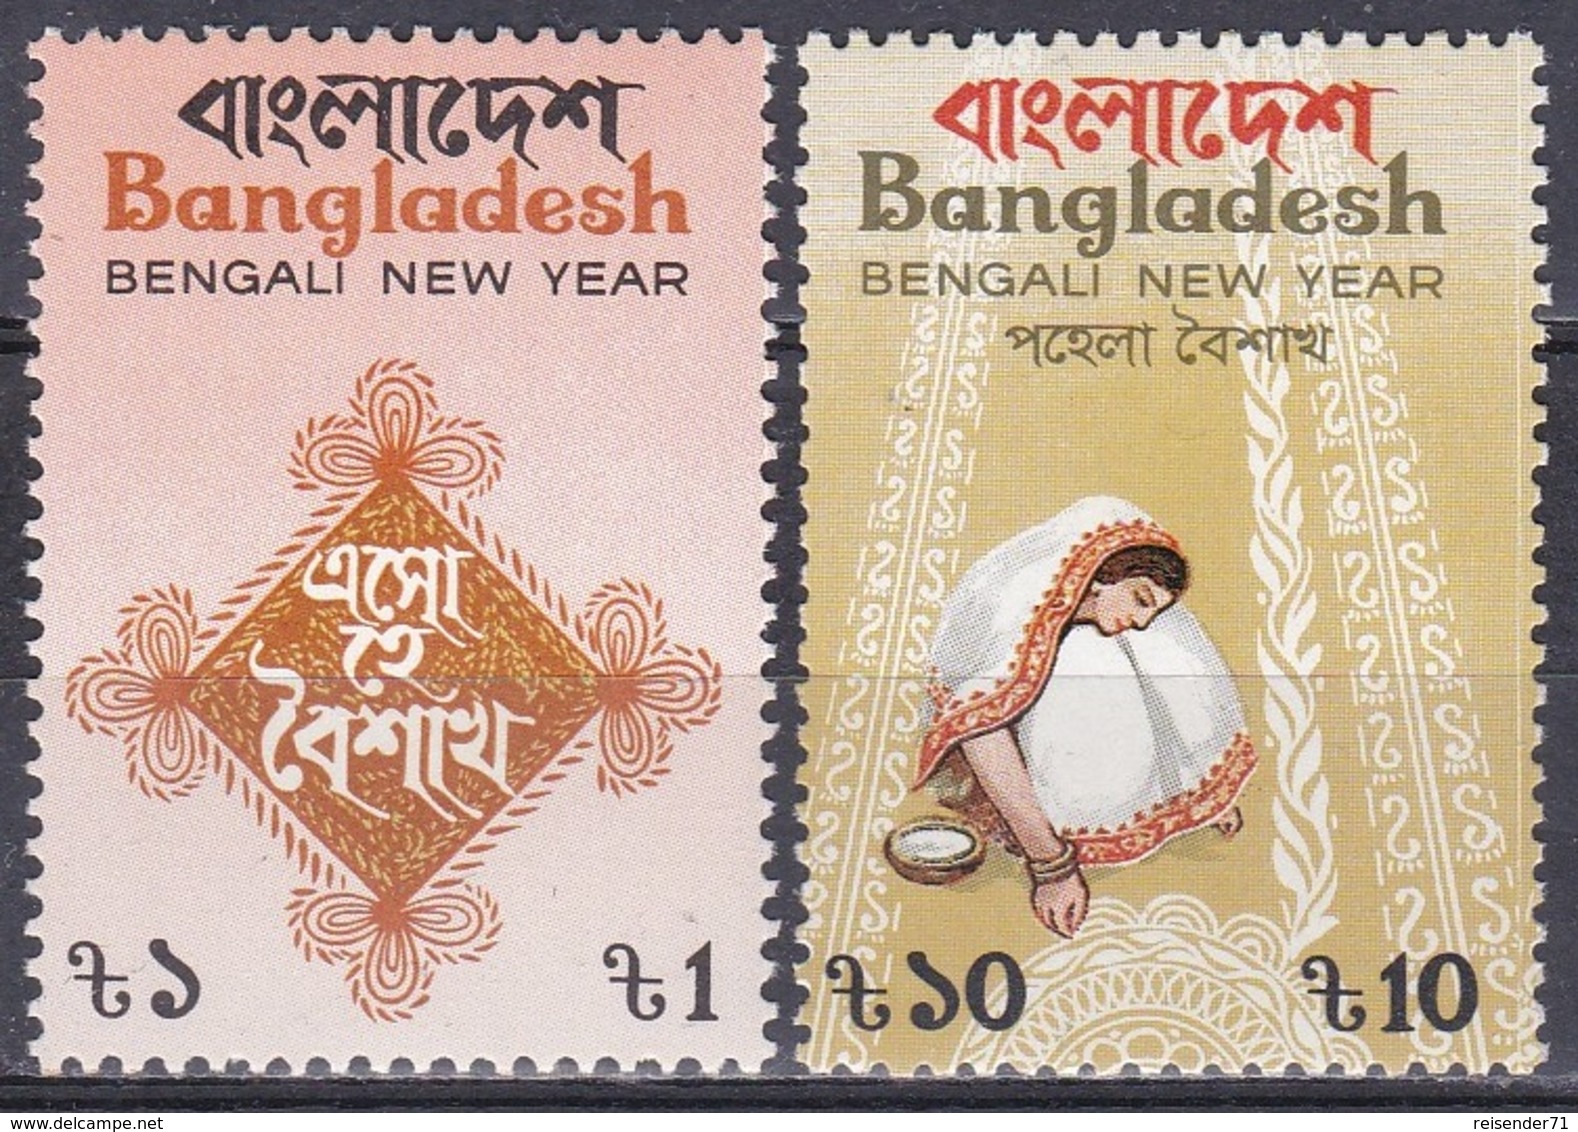 Bangladesch Bangladesh 1987 Feiertage Holiday Jahreswechsel Neujahr New Year, Mi. 260-1 ** - Bangladesh